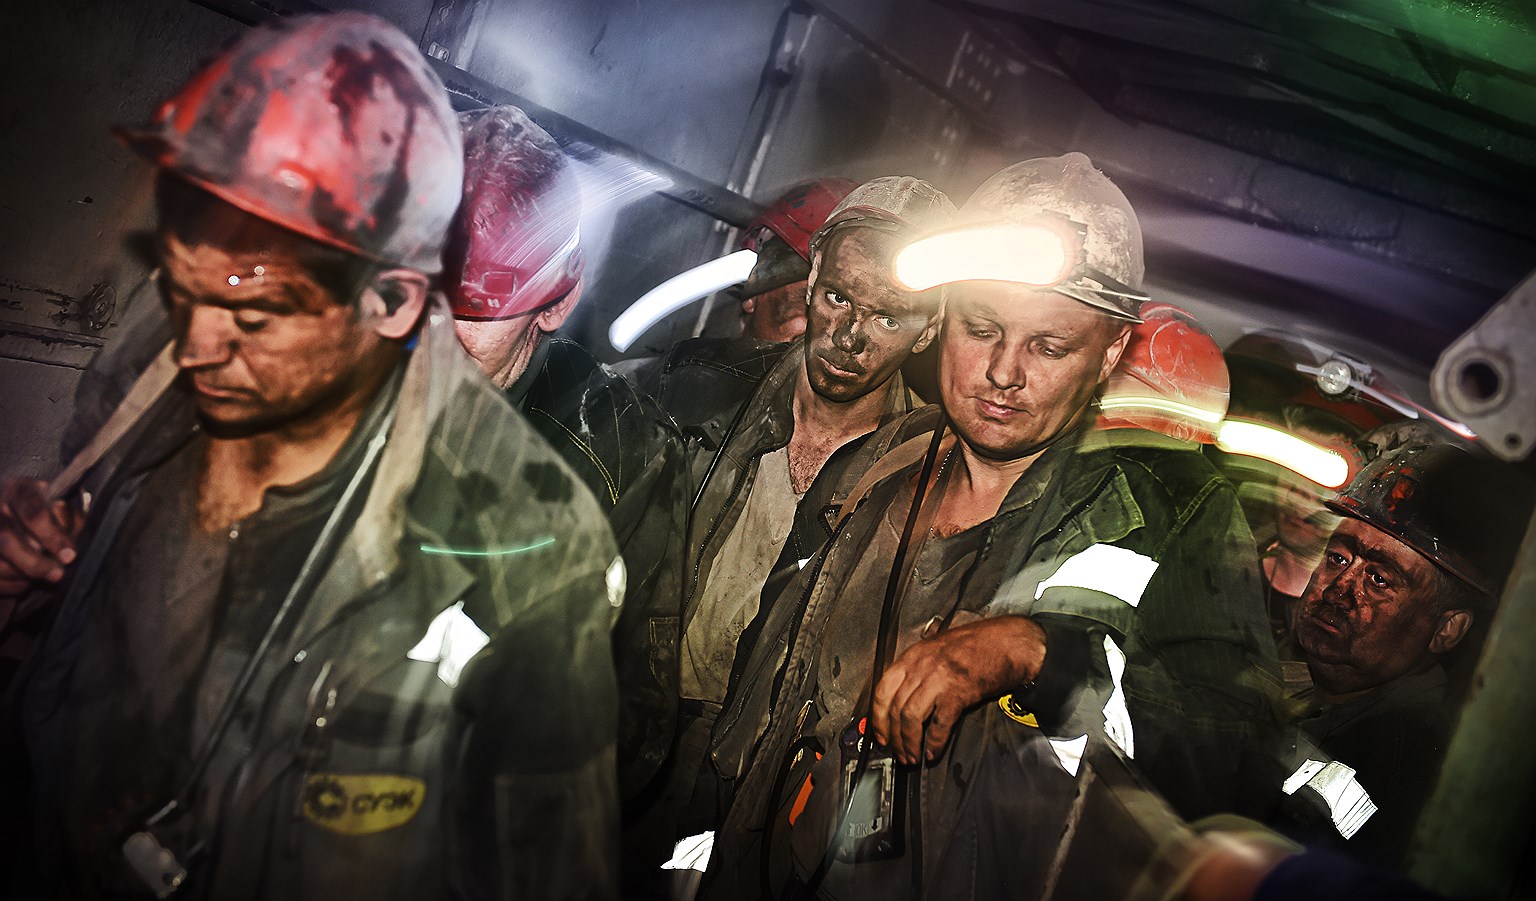 Сократить потребление угля — это и сократить, дать новую профессию десяткам тысяч людей, занятых тяжелейшим шахтерским трудом 